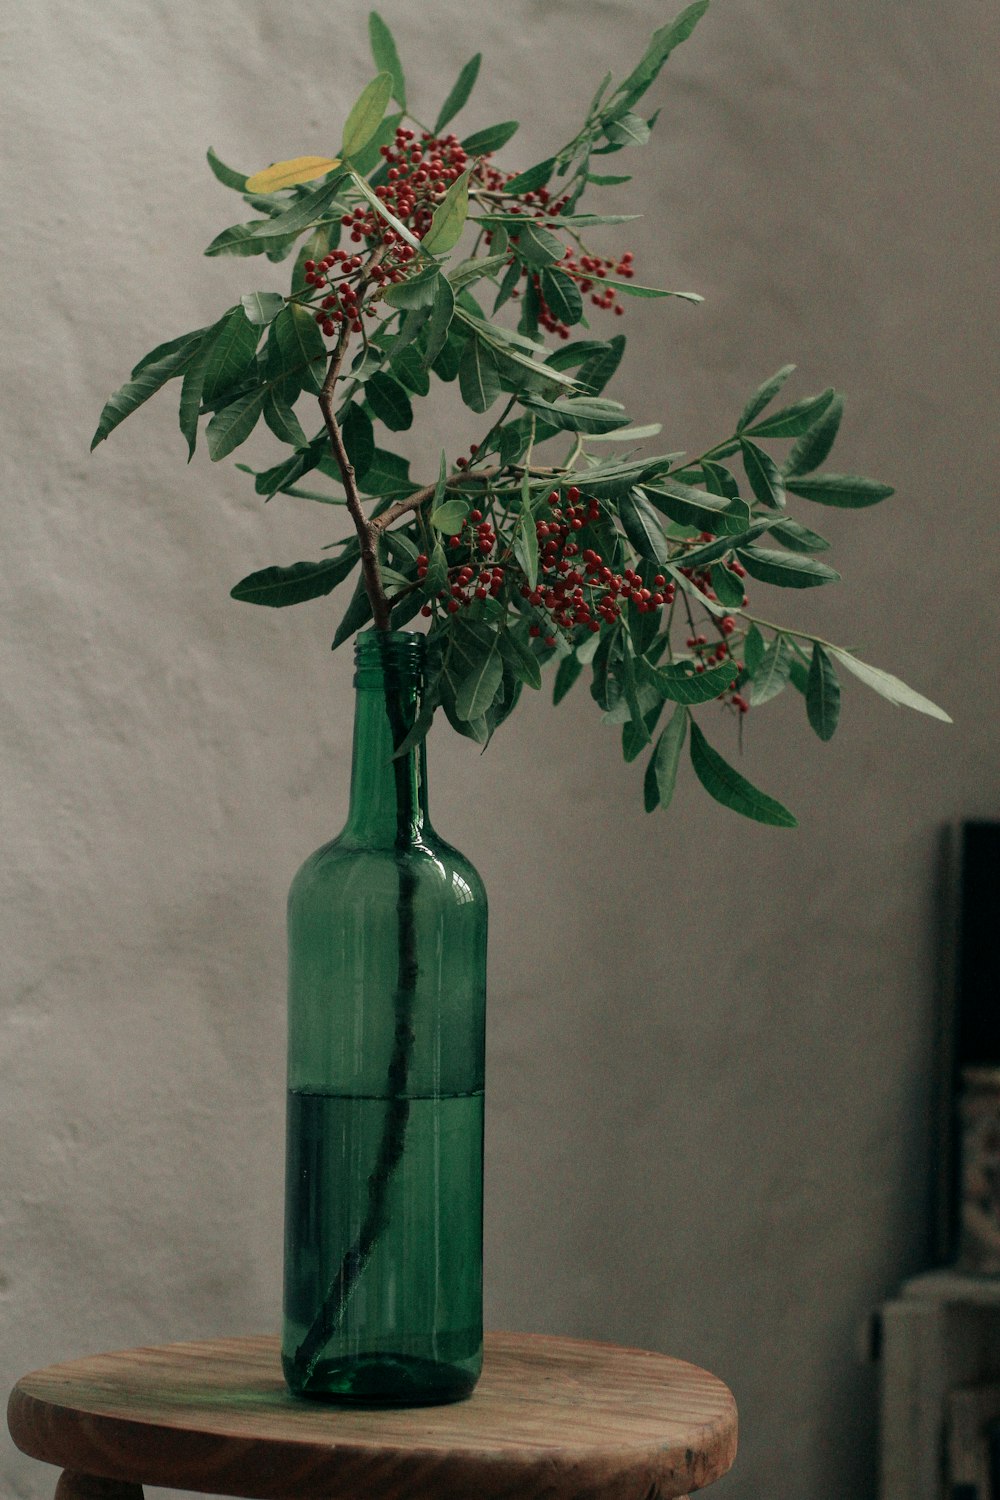 緑のガラスの花瓶に赤と緑の植物